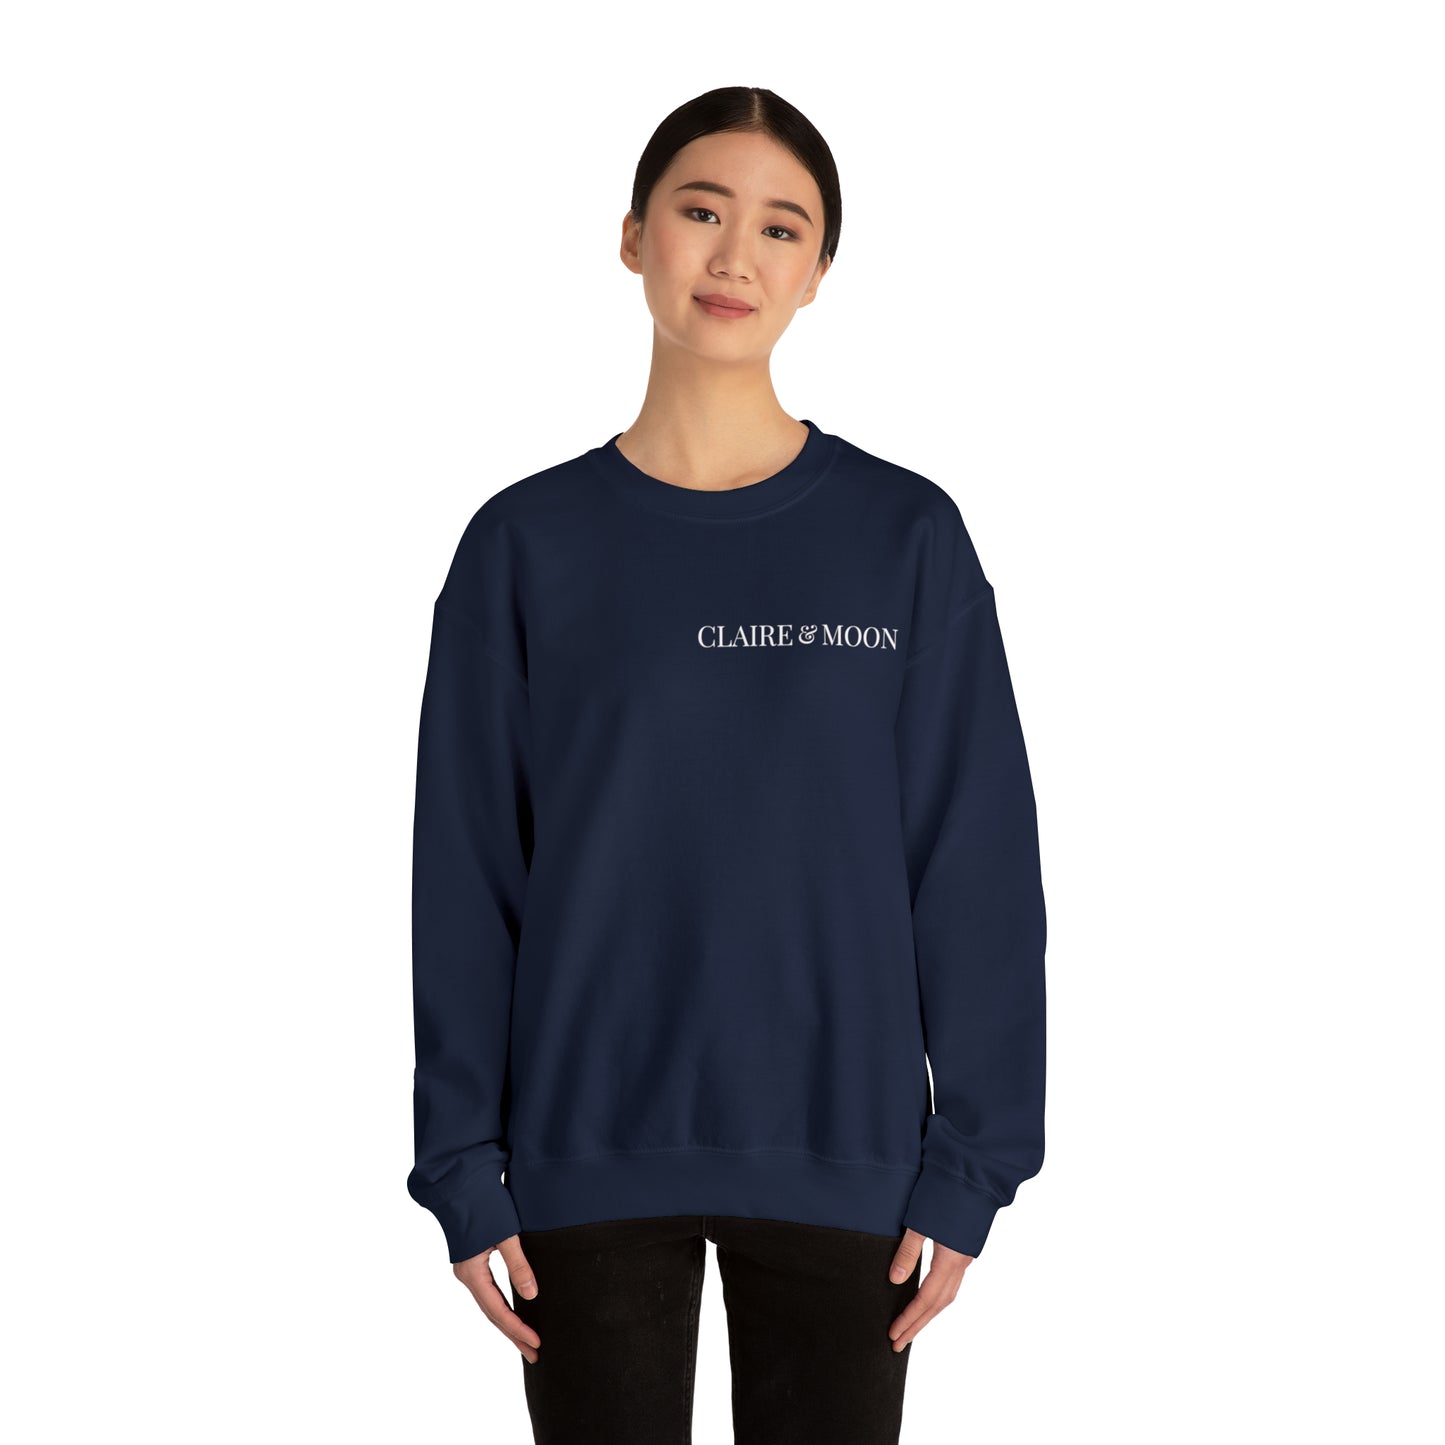 Claireandmoon White Logo Unisex Heavy Blend™ Crewneck Sweatshirt